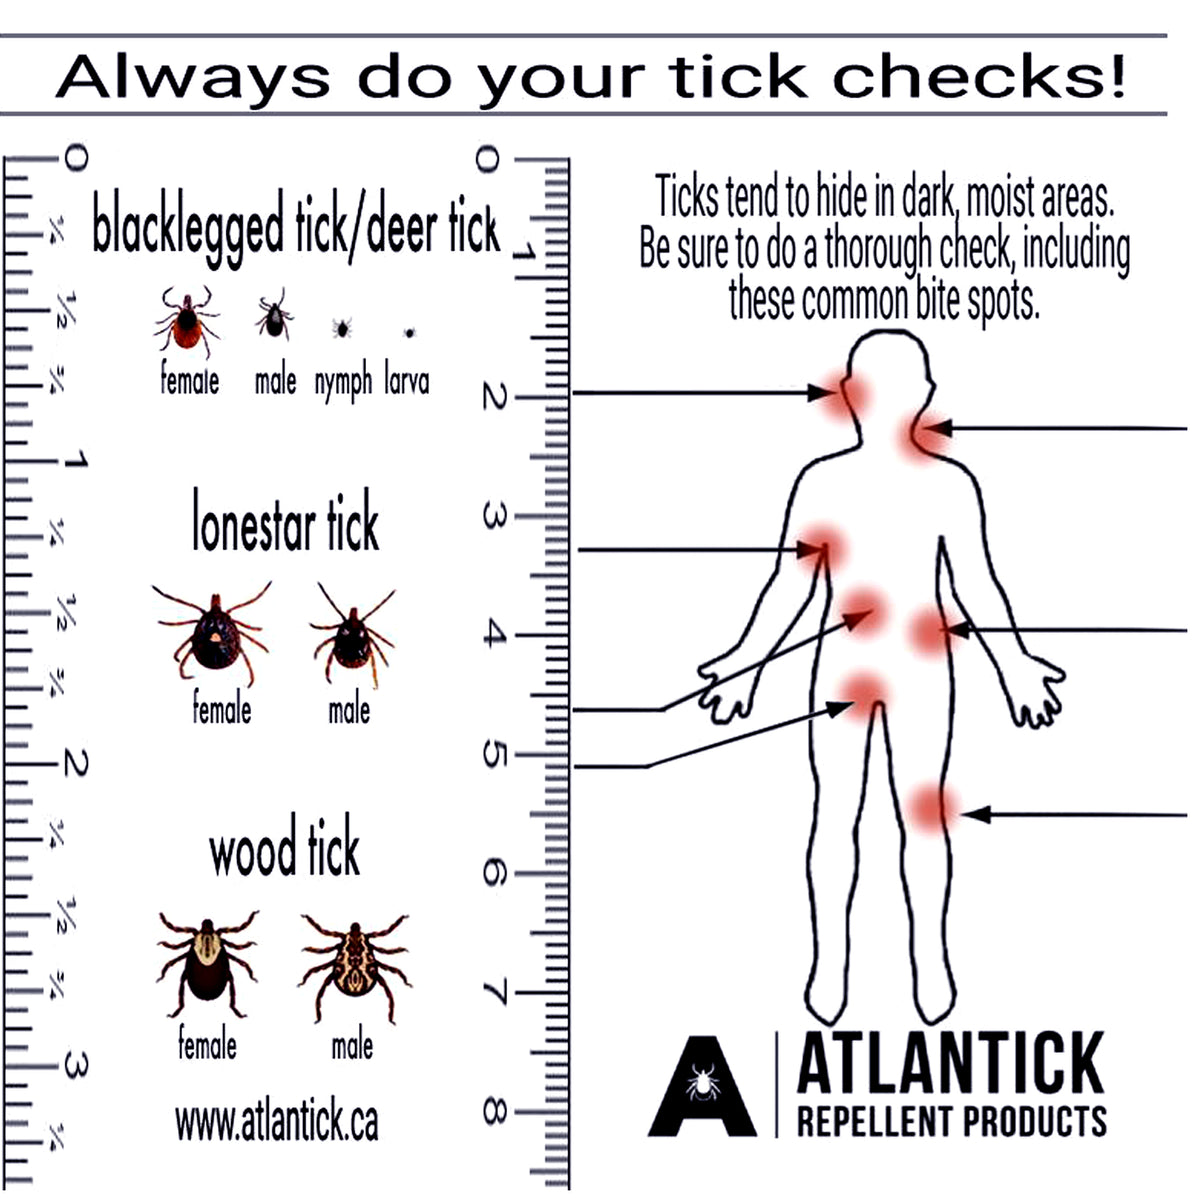 AtlanTick Tick Removal Kit